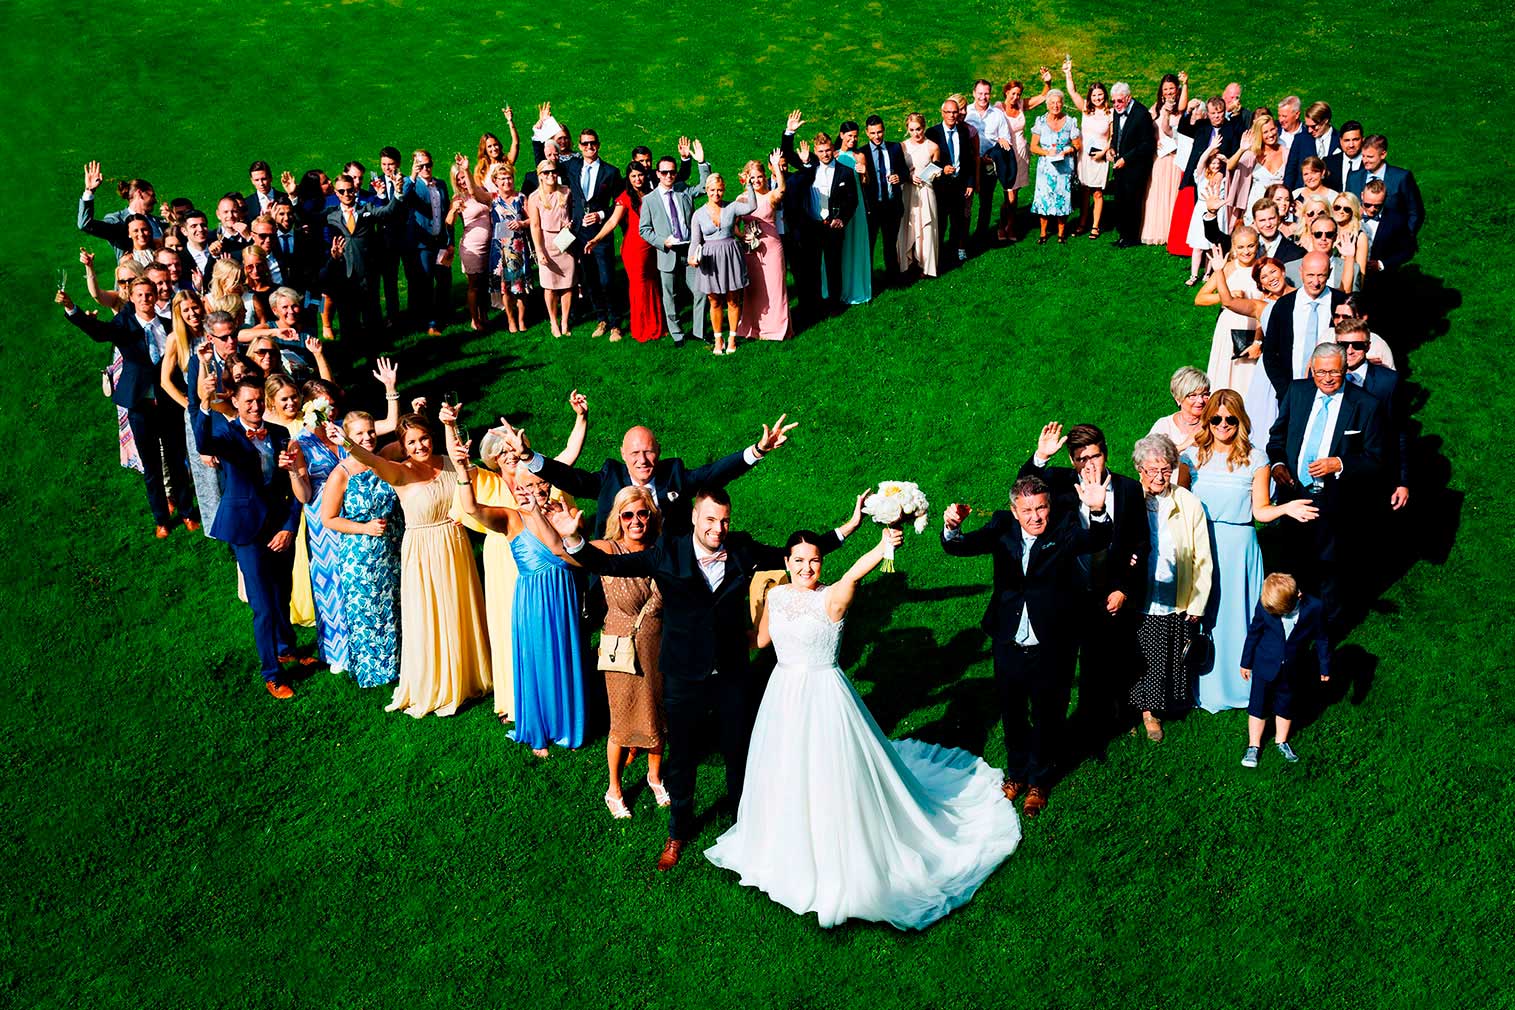 Fotograf bilder
Bröllopsgäster i hjärtformation i Tängsta